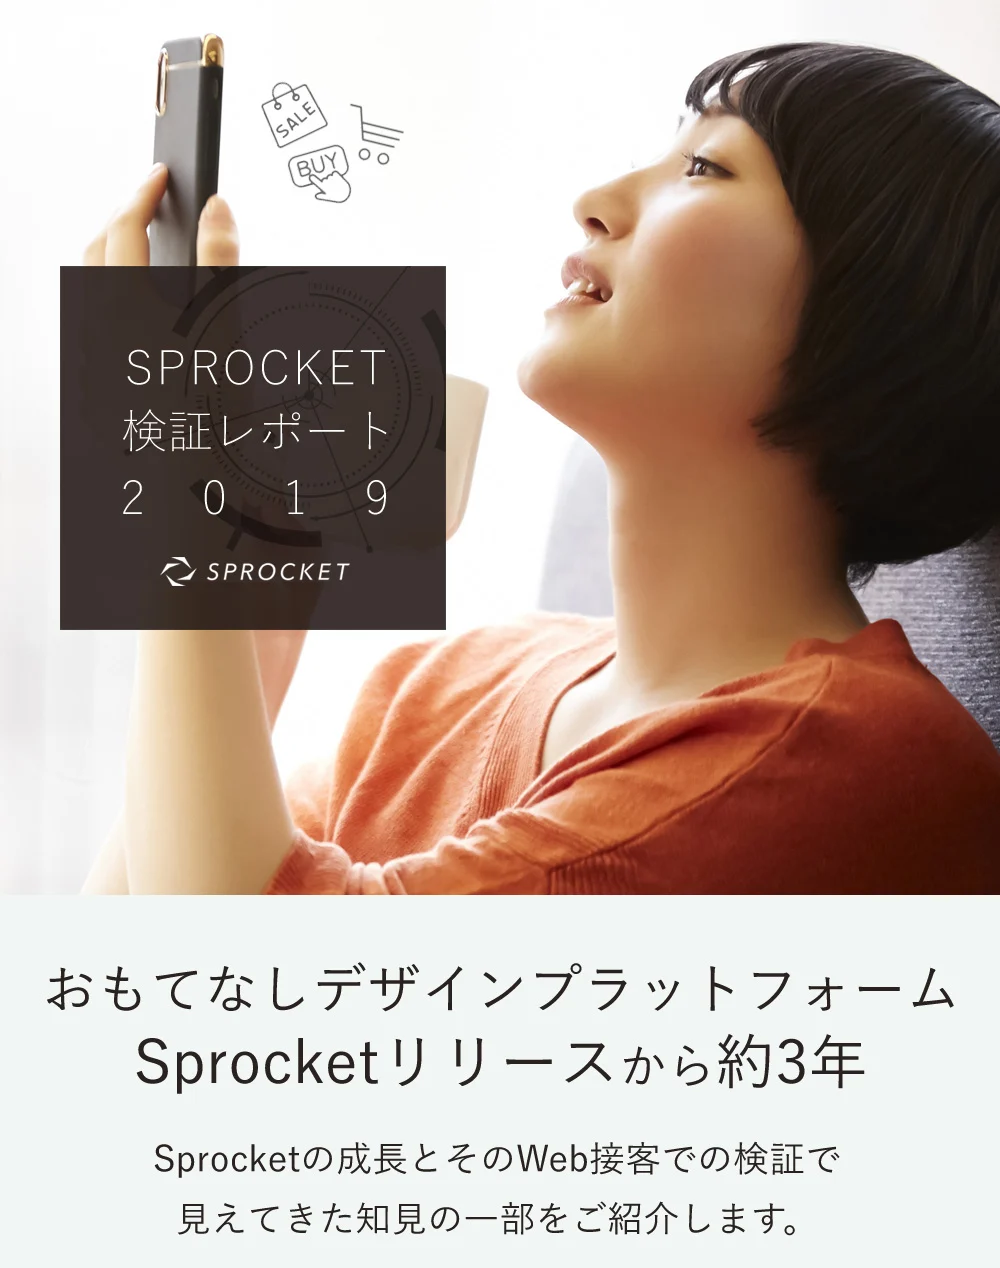 画像：Sprocket2019インフォグラフィックスタイトル＆スマホをみる女性のイメージ画像